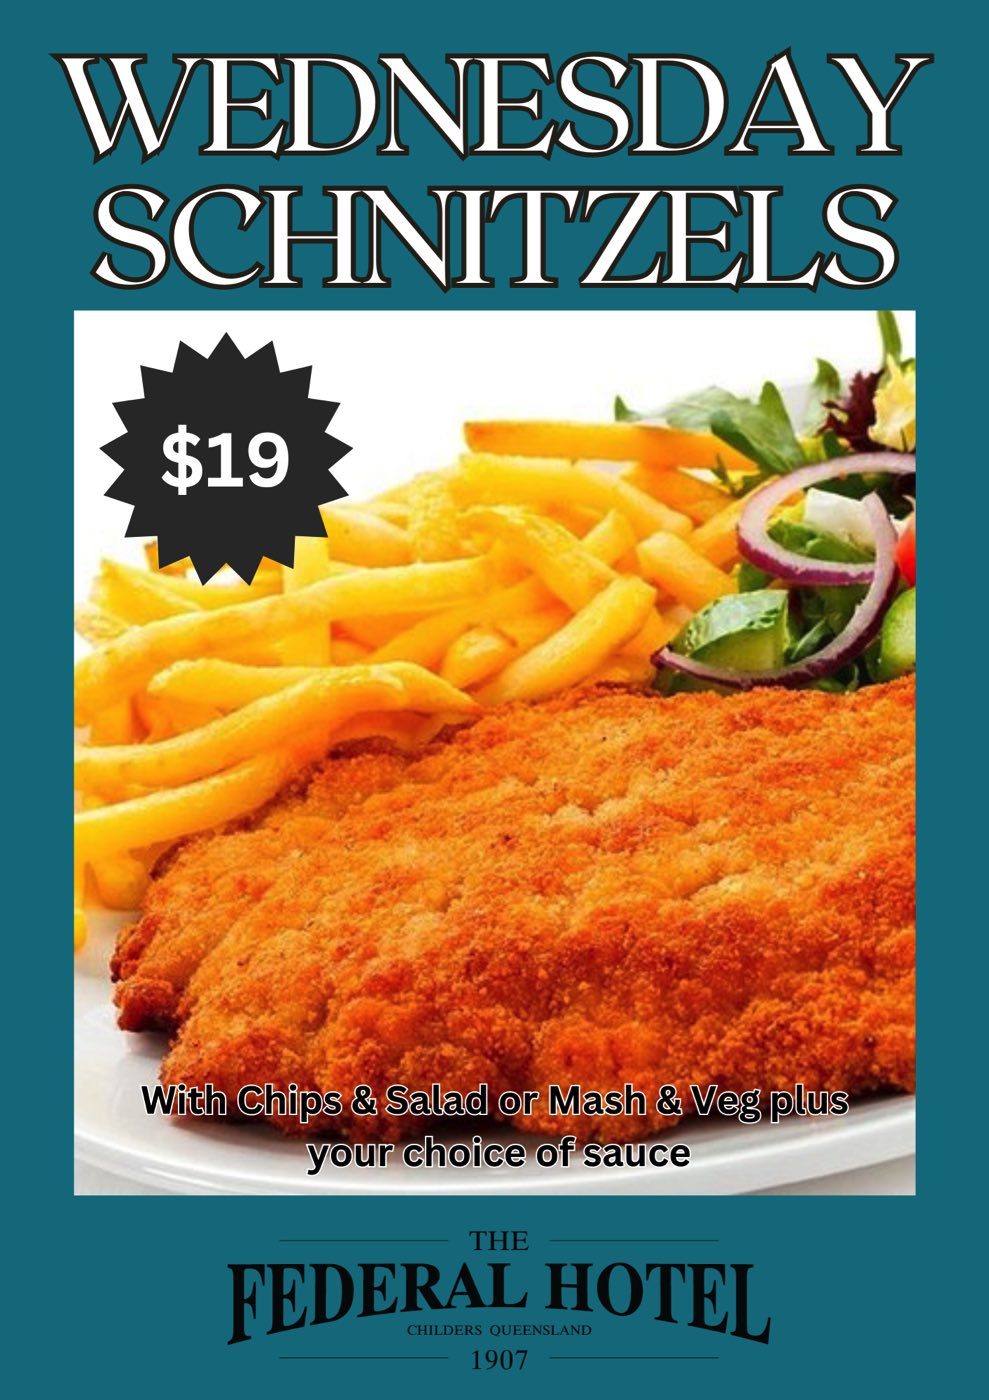 Wednesday - Schnitzels $19